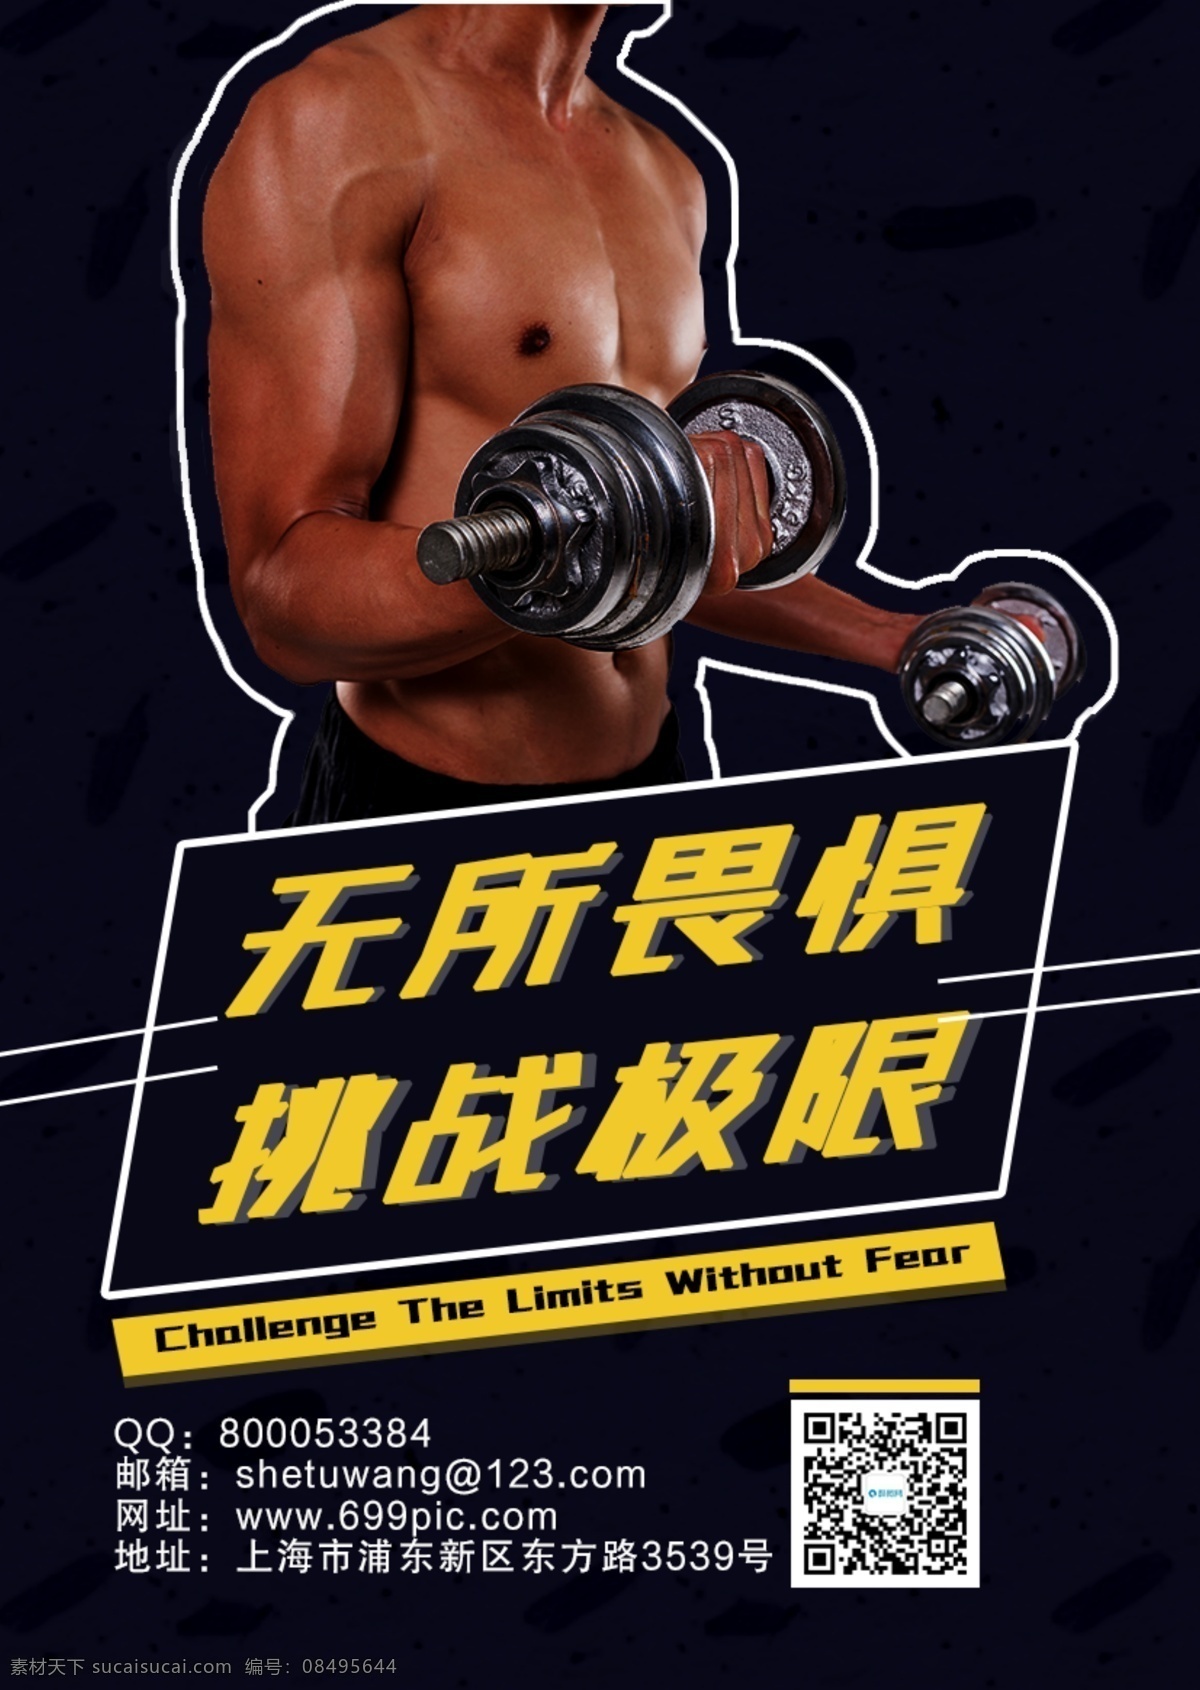 运动健身海报 健身 运动 有氧运动 塑身 瘦身 身材 体形 私教 教练 肌肉 健身房 健身俱乐部 生命在于运动 猛男训练 健身运动海报